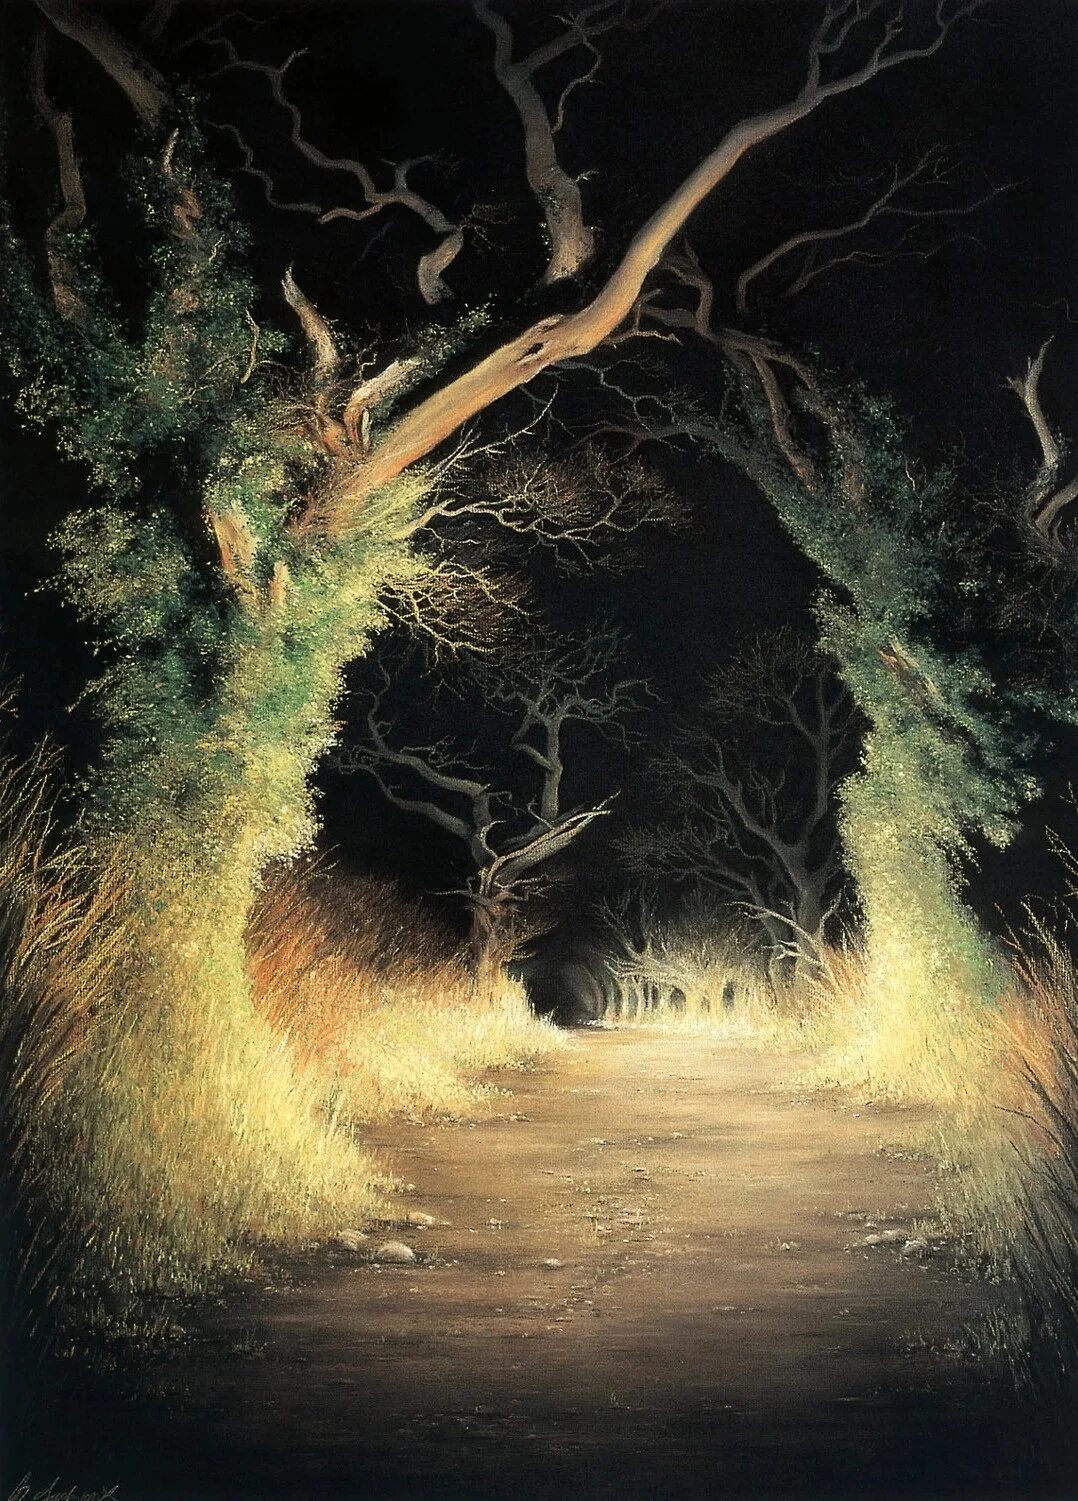 Sudworth, Anne художник. Картина свет. Загадочный свет. Мрачный лес. Дерево освещенное луной